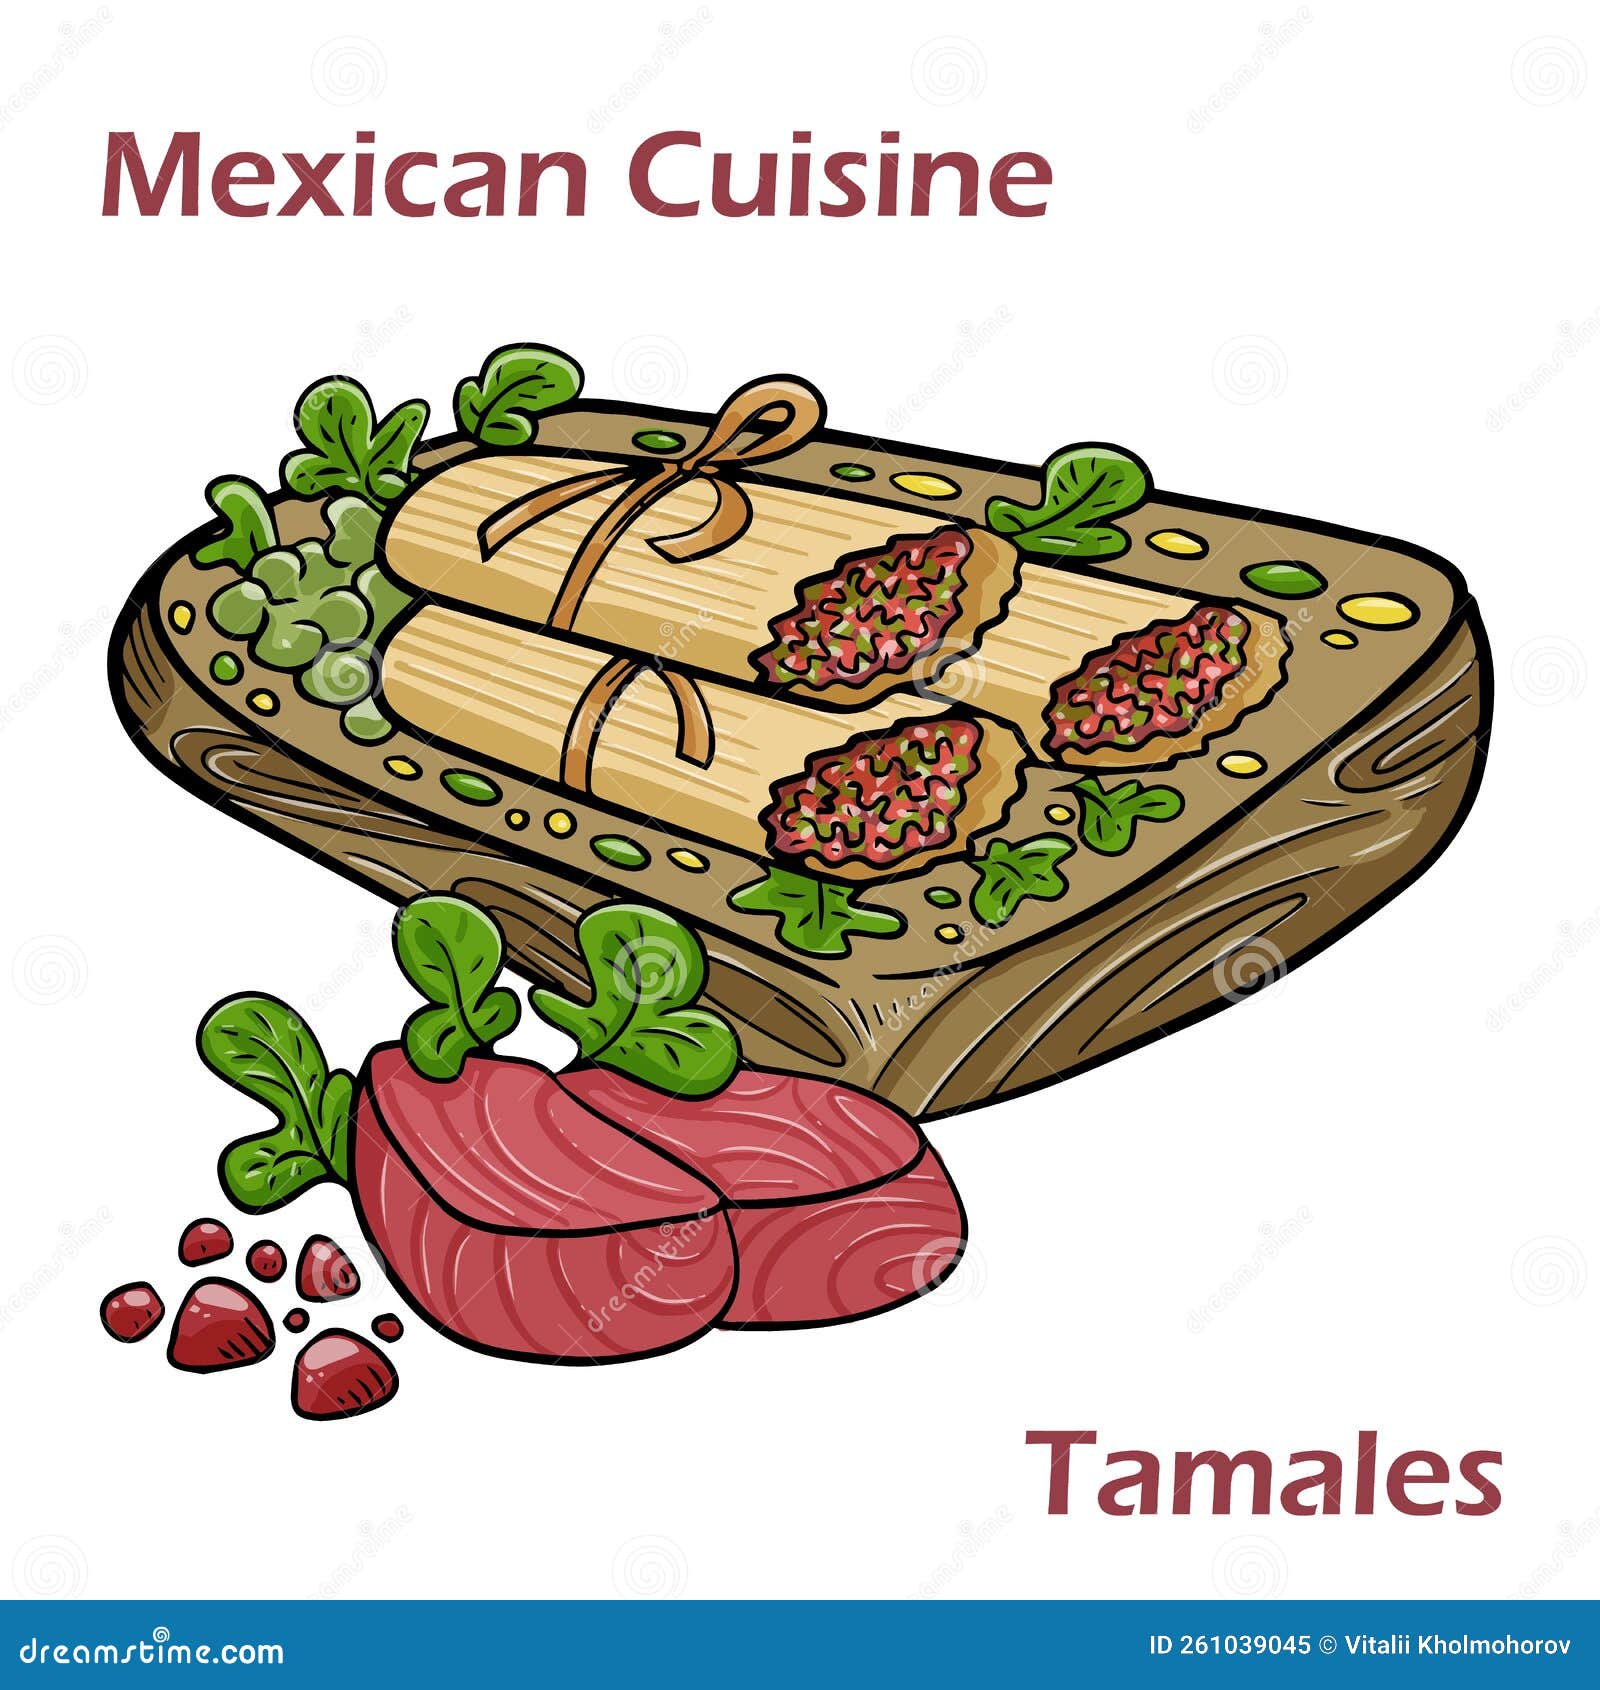 O chimichanga na culinária mexicana - Informações Gastronômicas